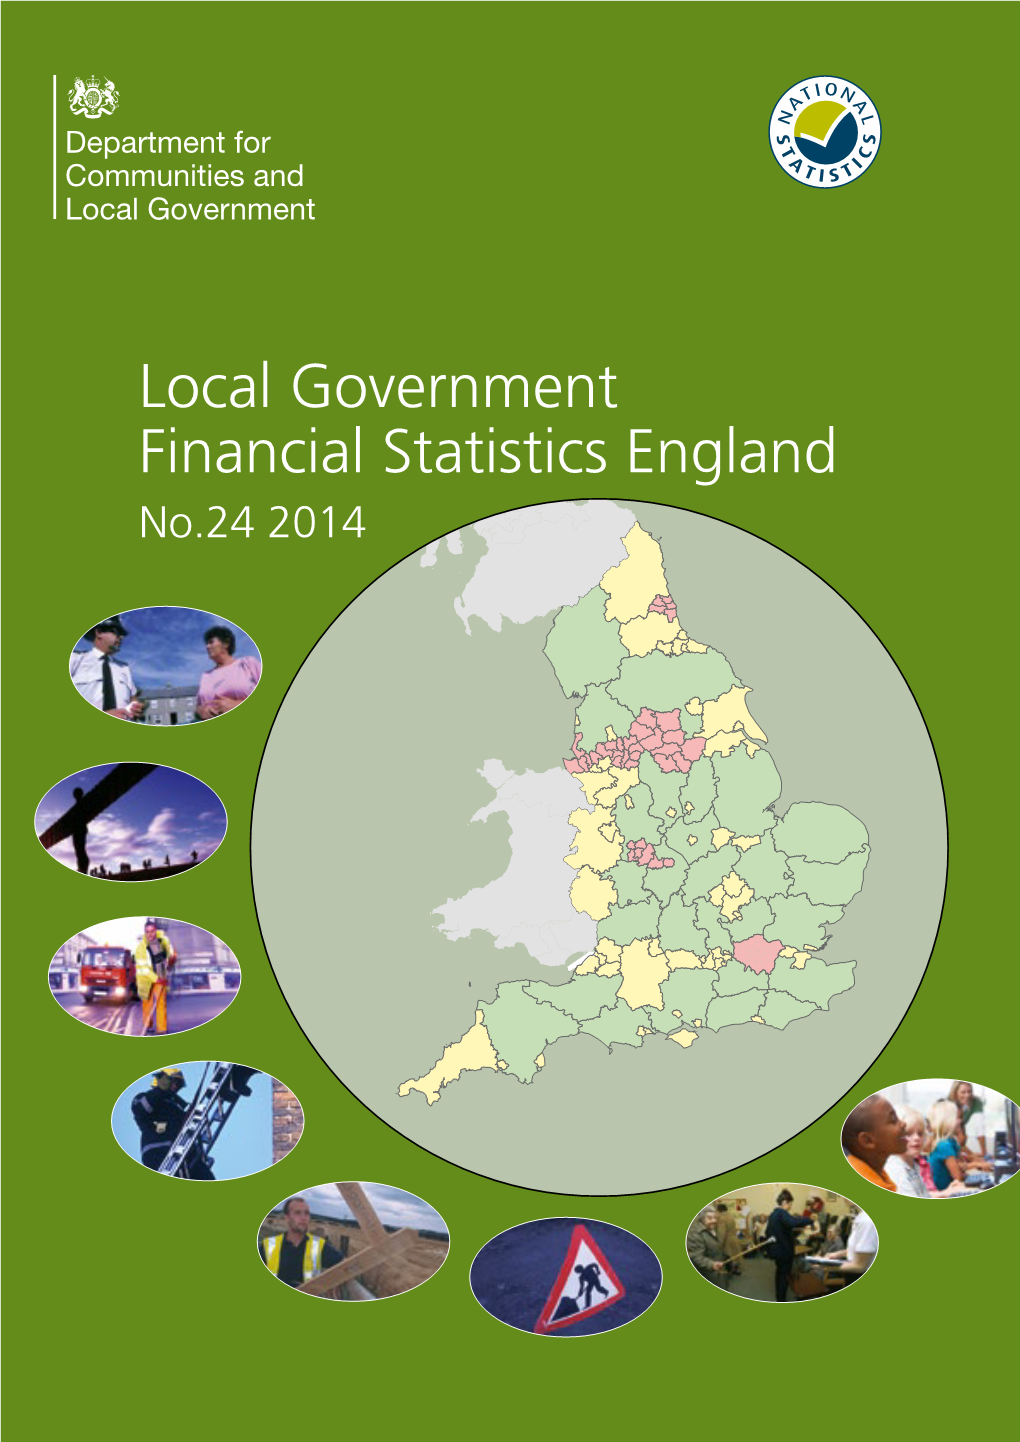 Local Government Financial Statistics England No. 24 2014